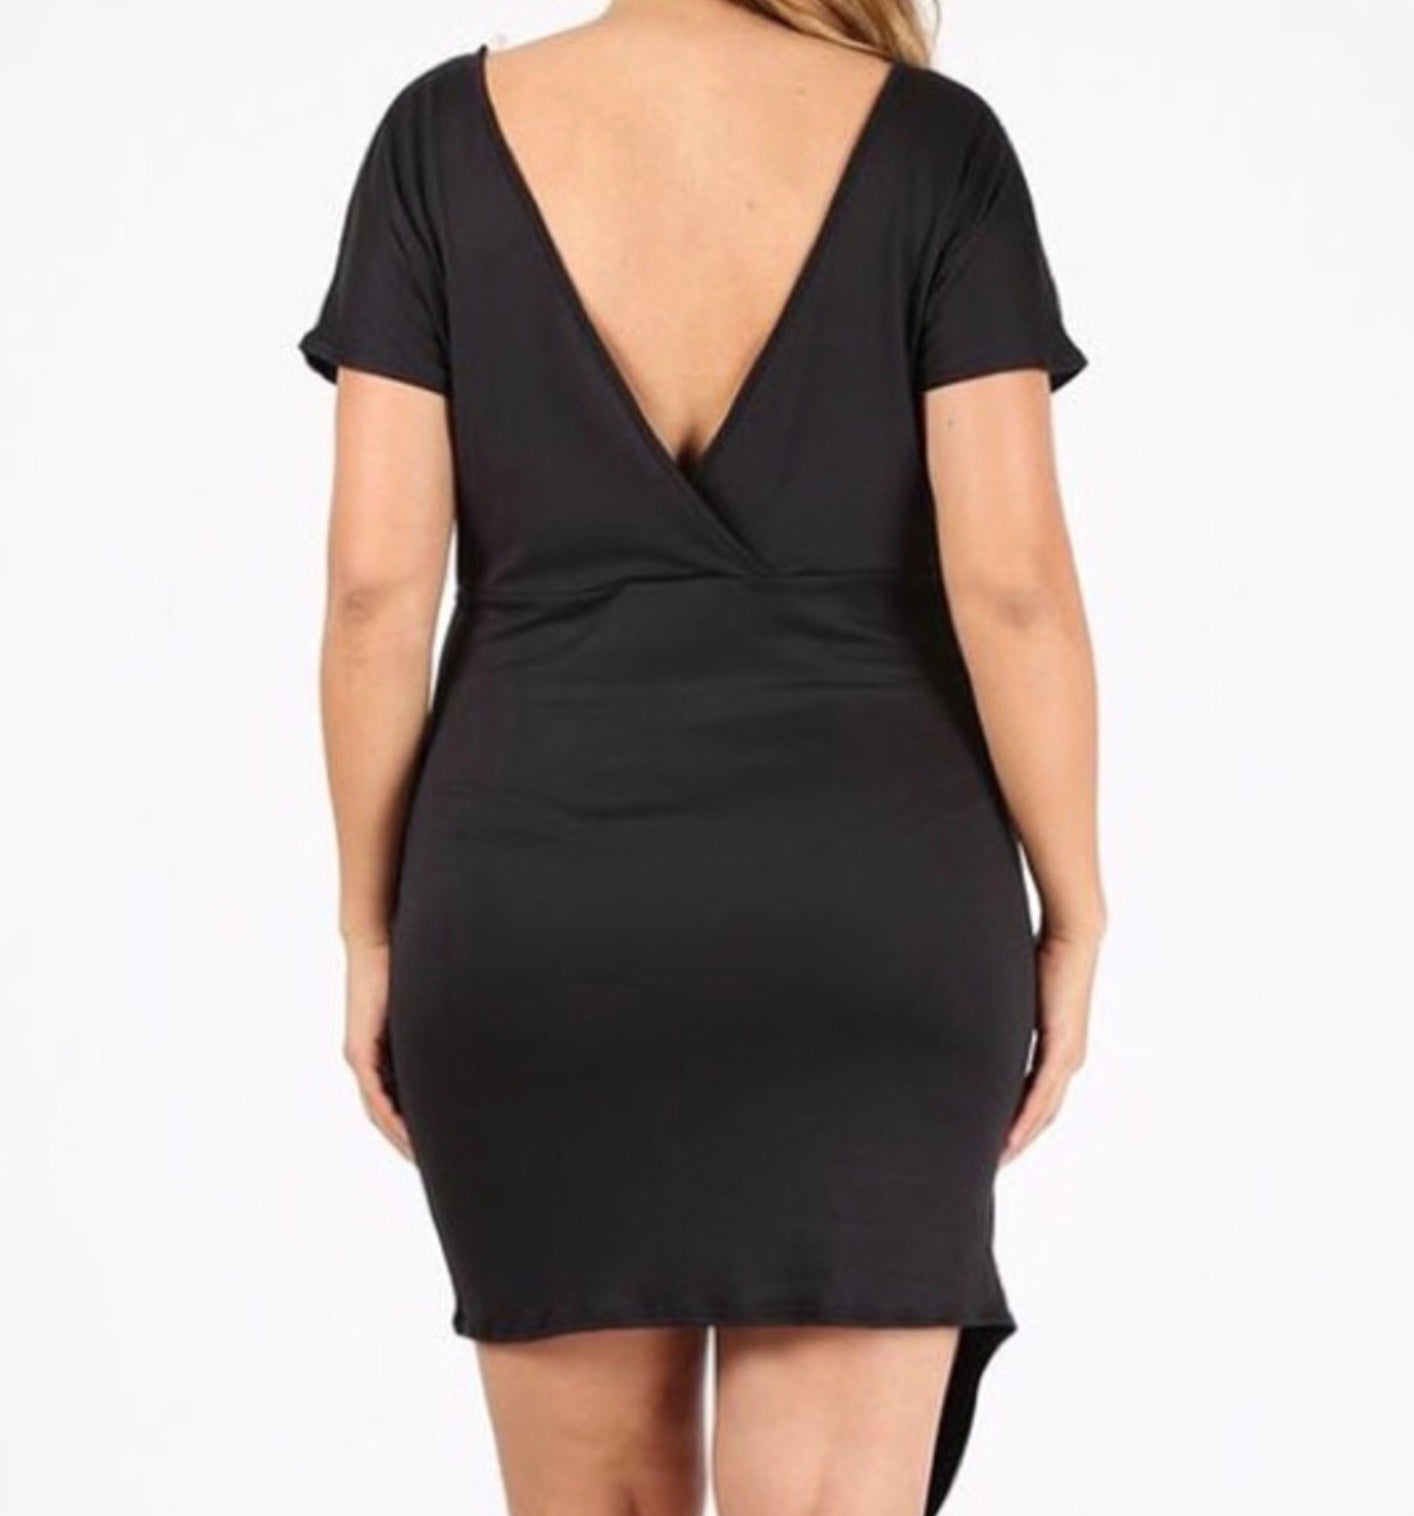 Black Plus Size Mini Dress